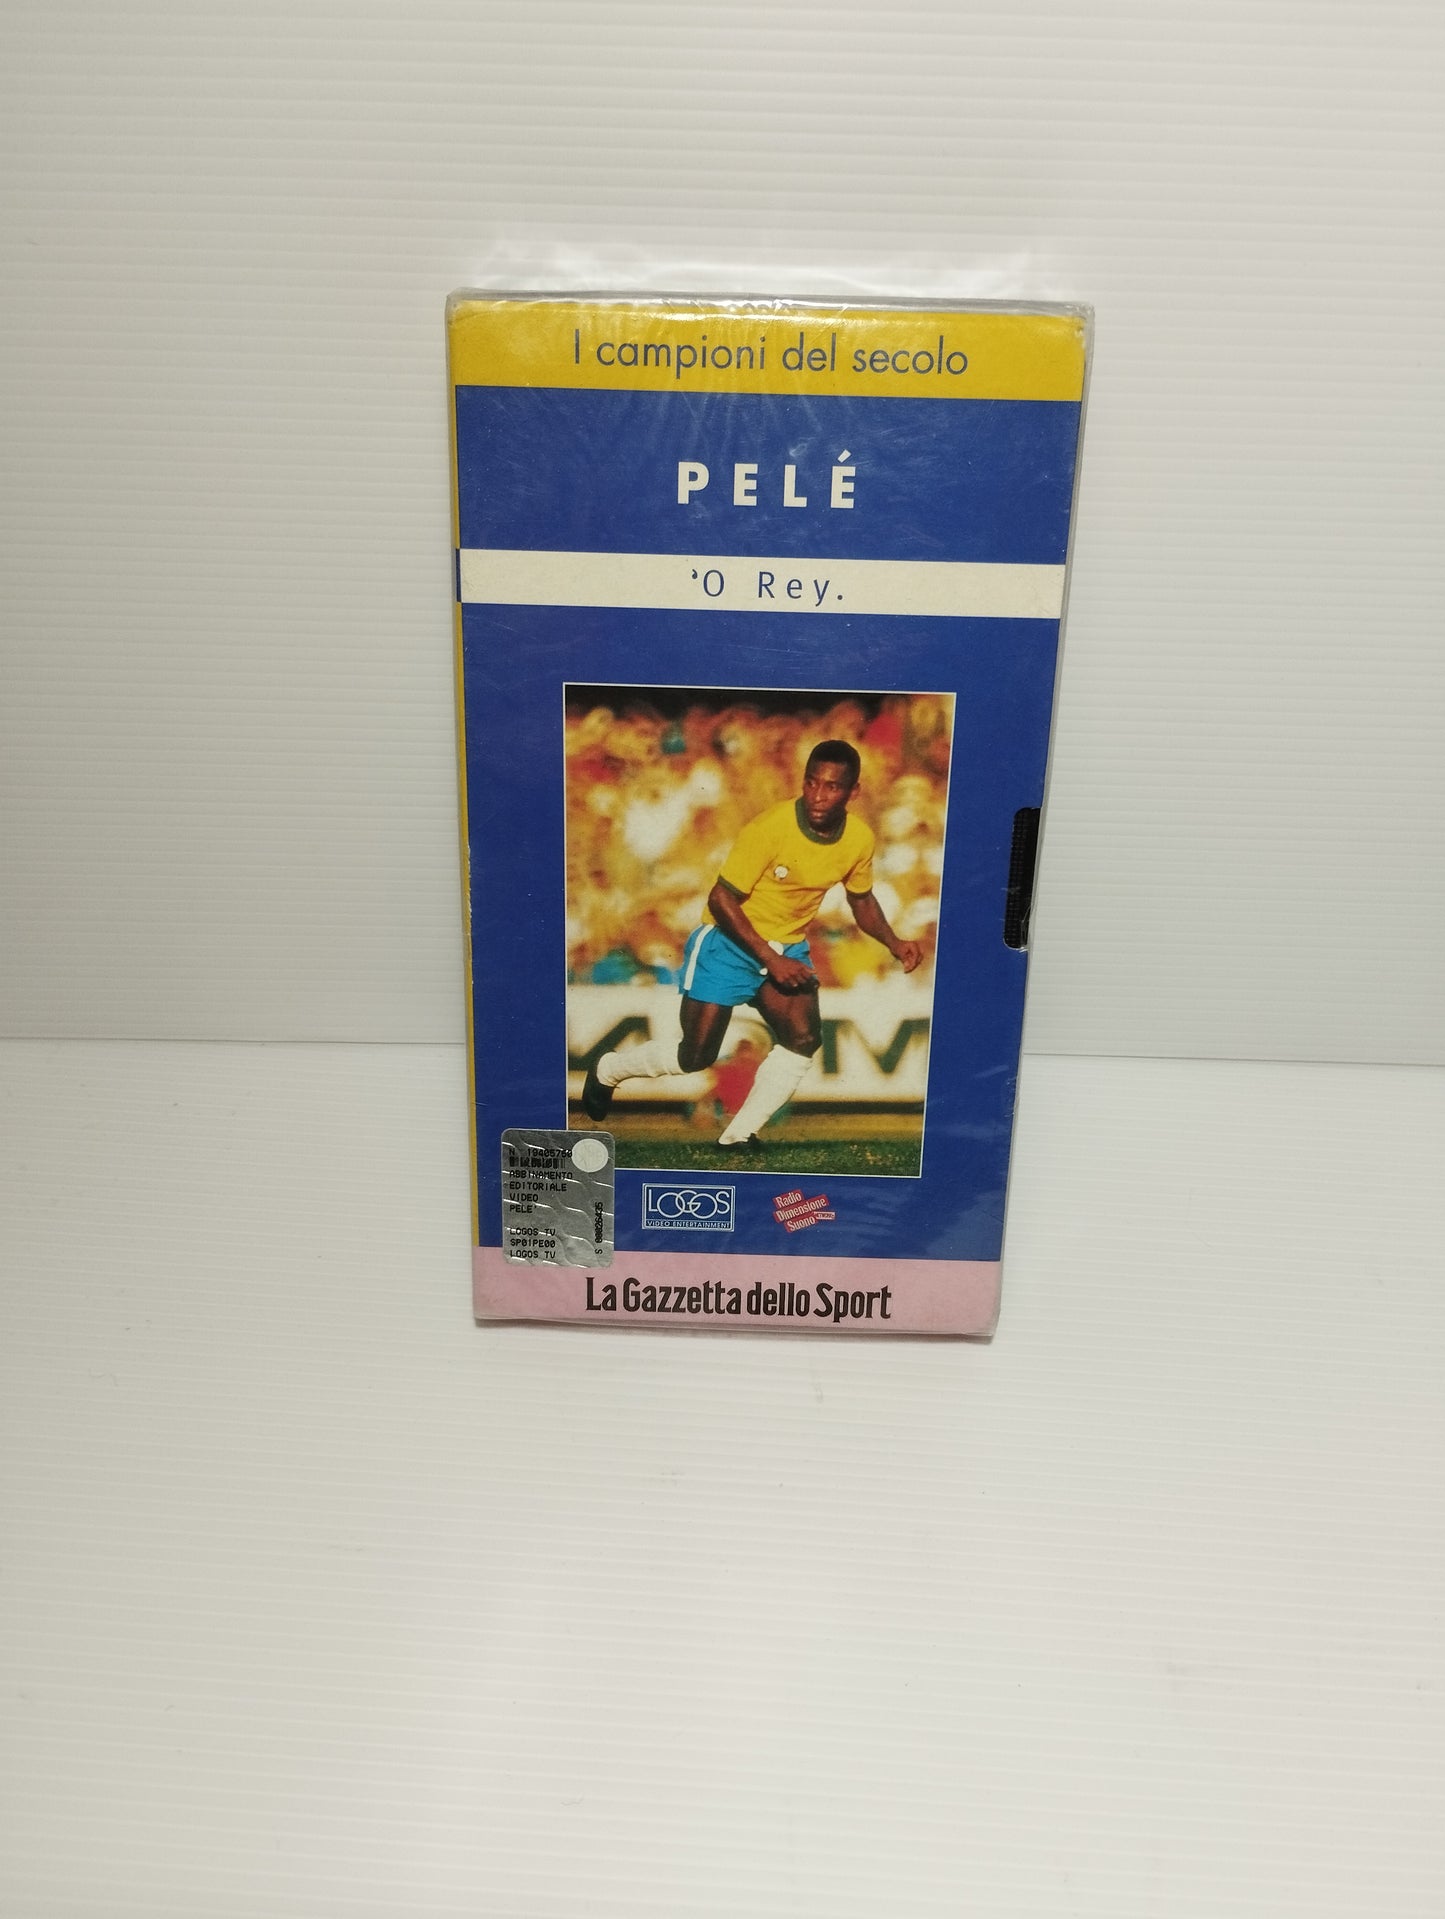 VHS Pelé Gazzetta dello Sport